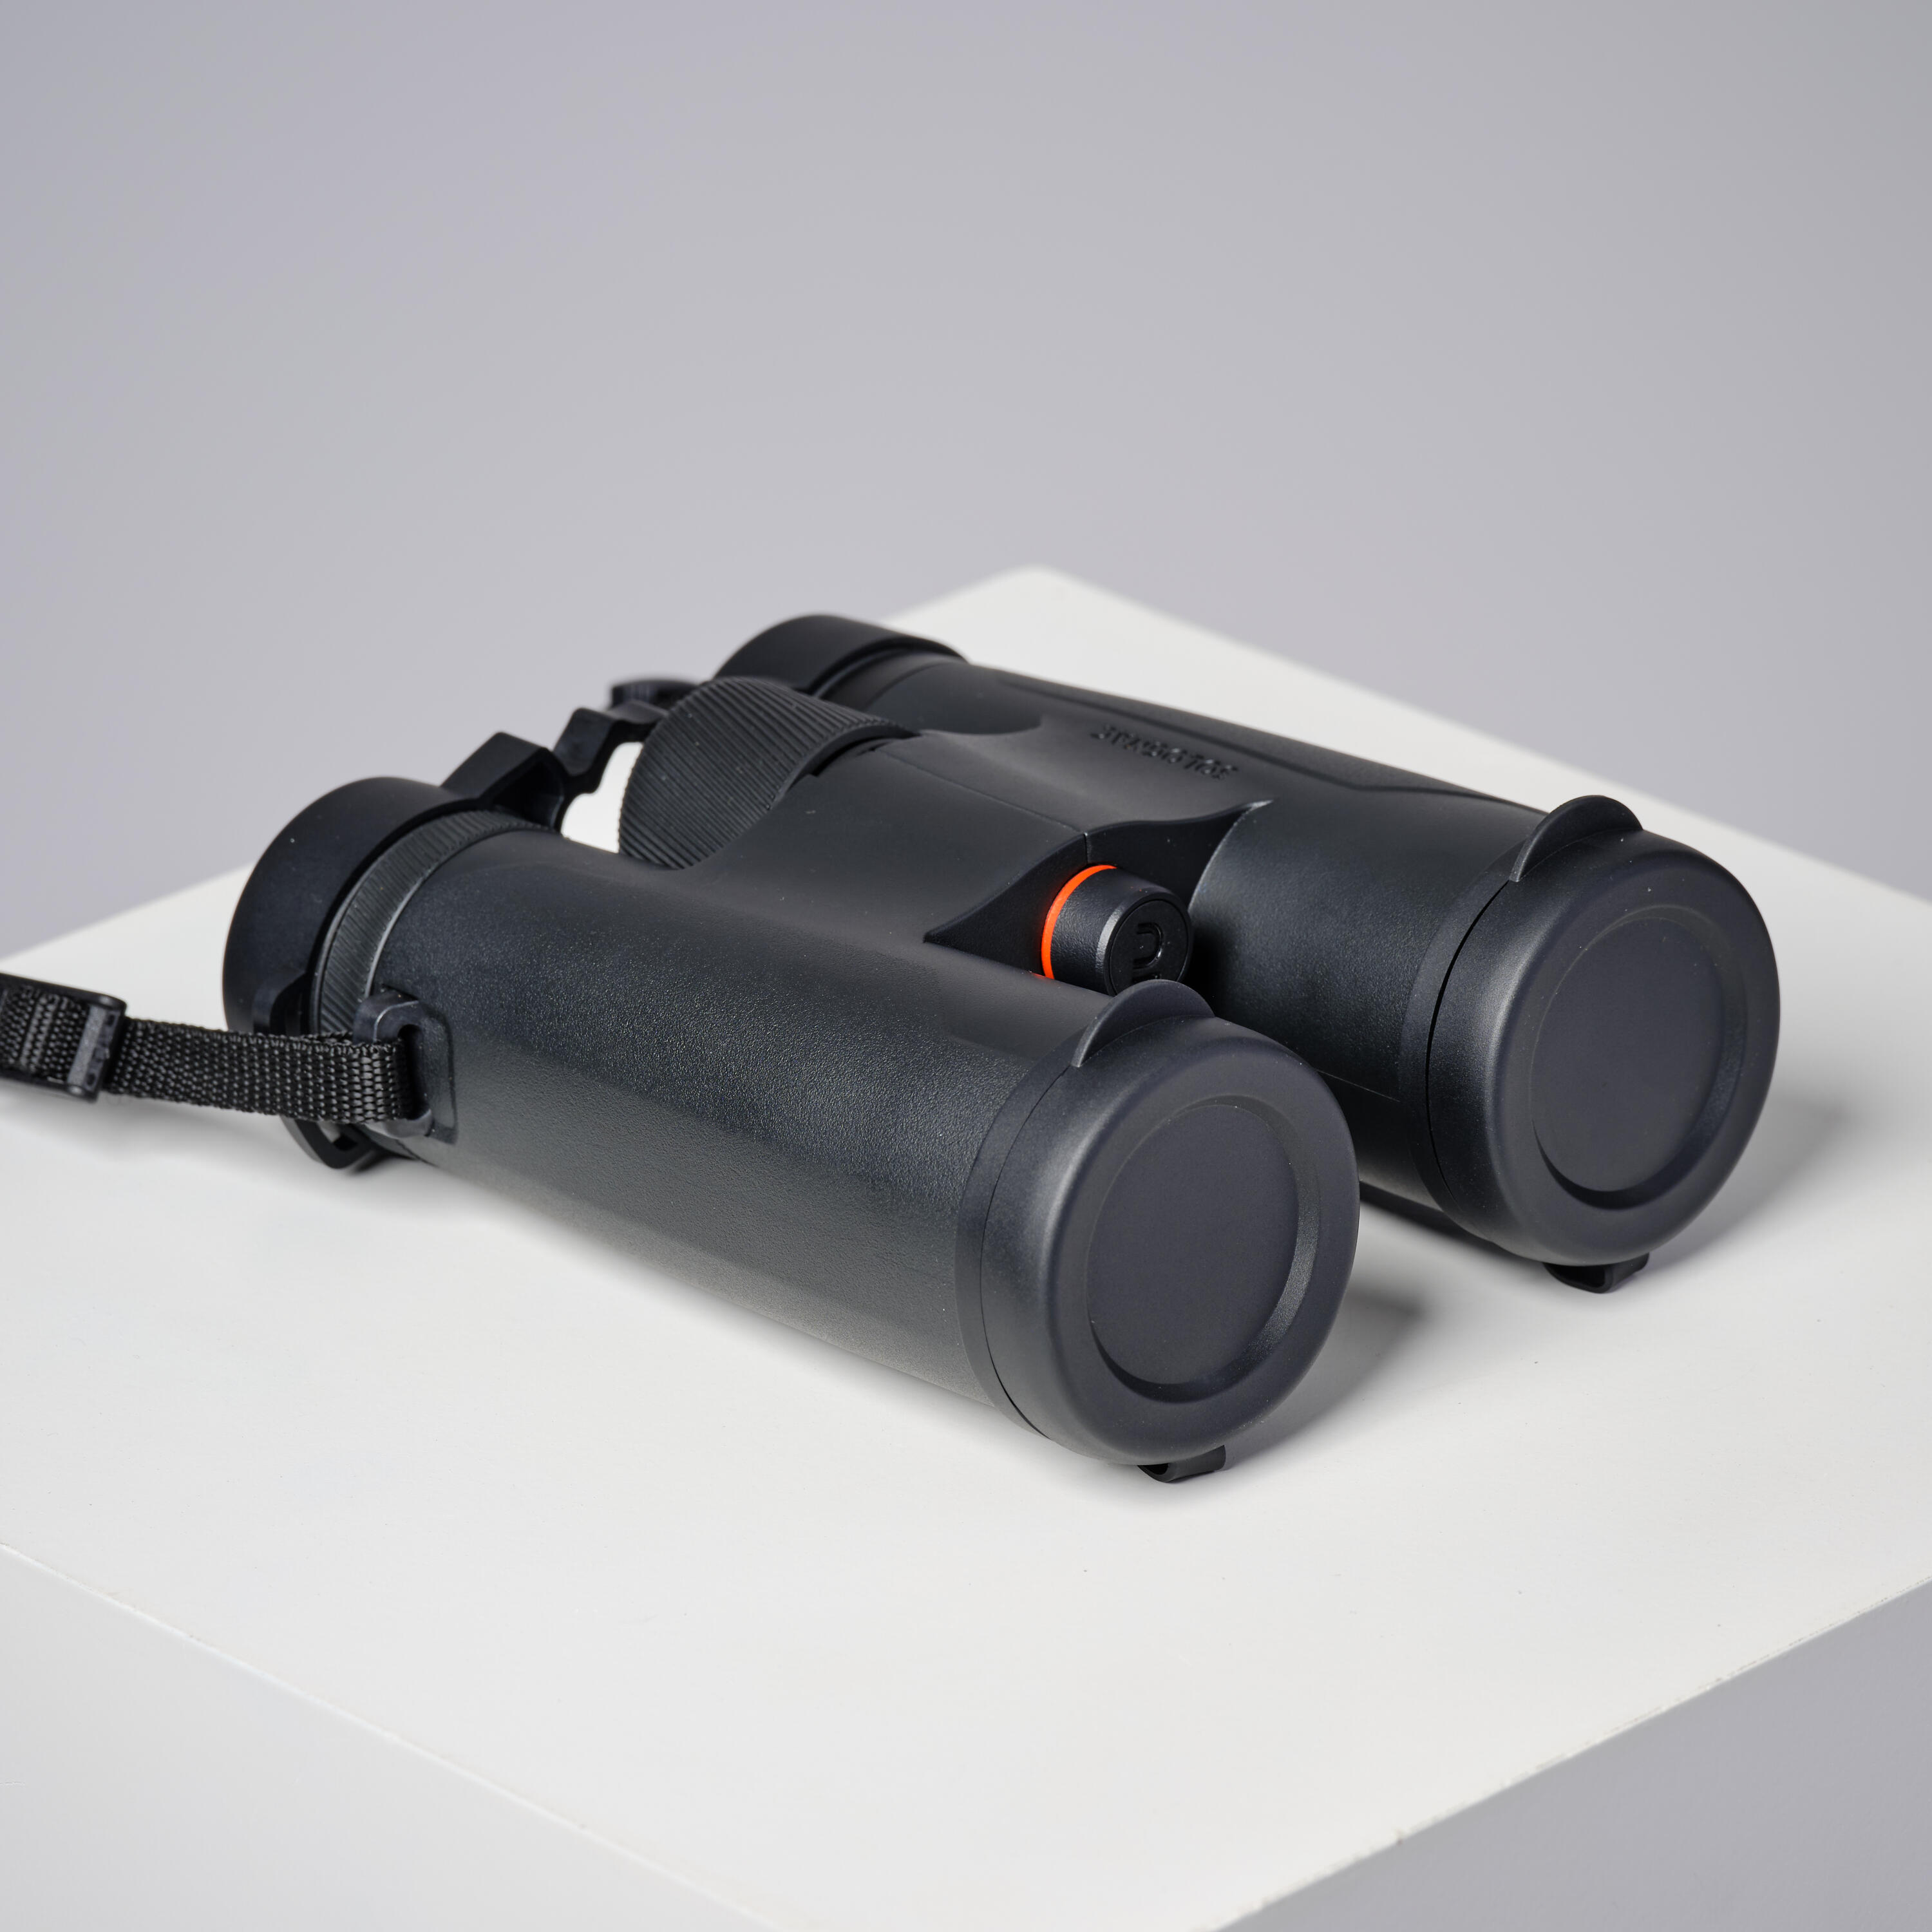 Waterproof hunting binoculars 100 10x42 - black 4/14